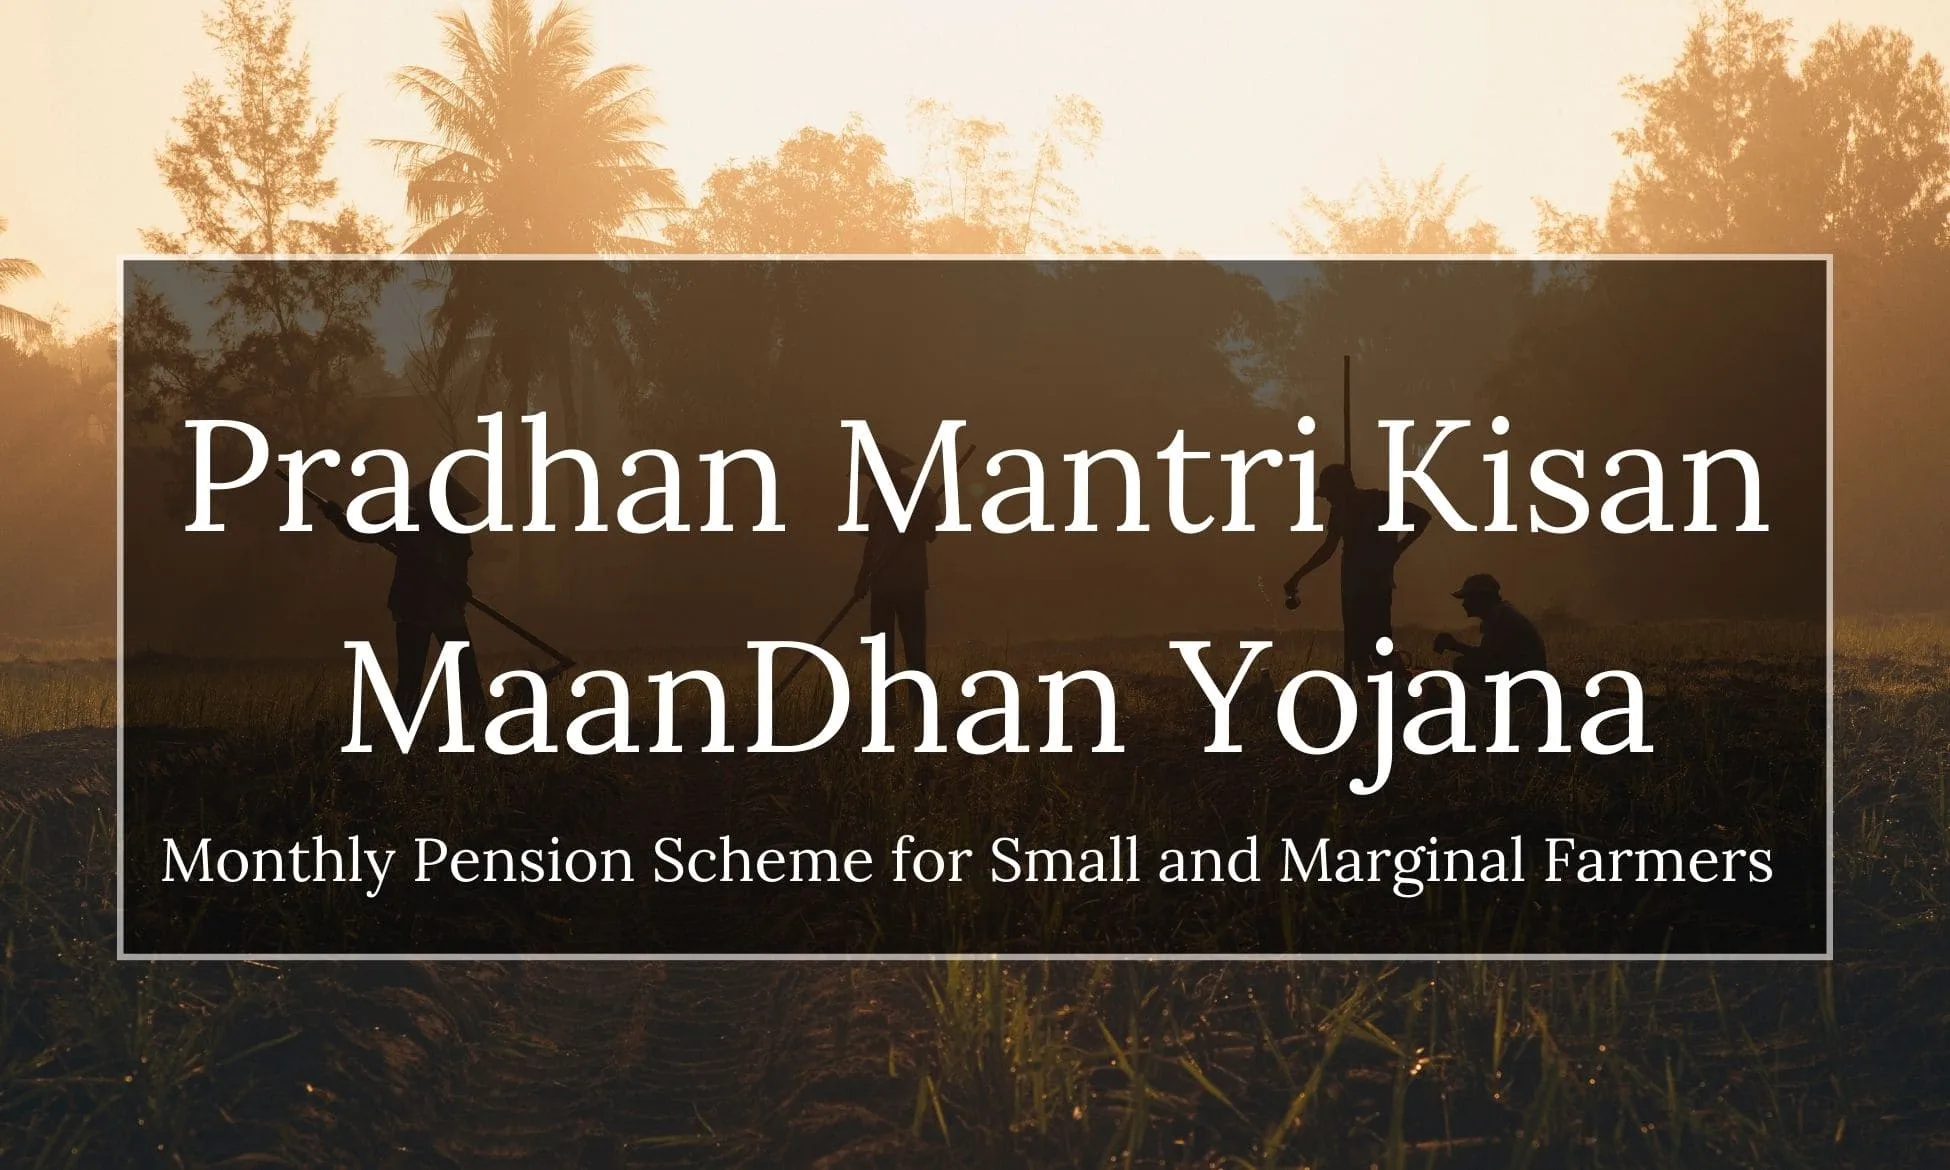 Pradhan Mantri Kisan Maandhan Yojana